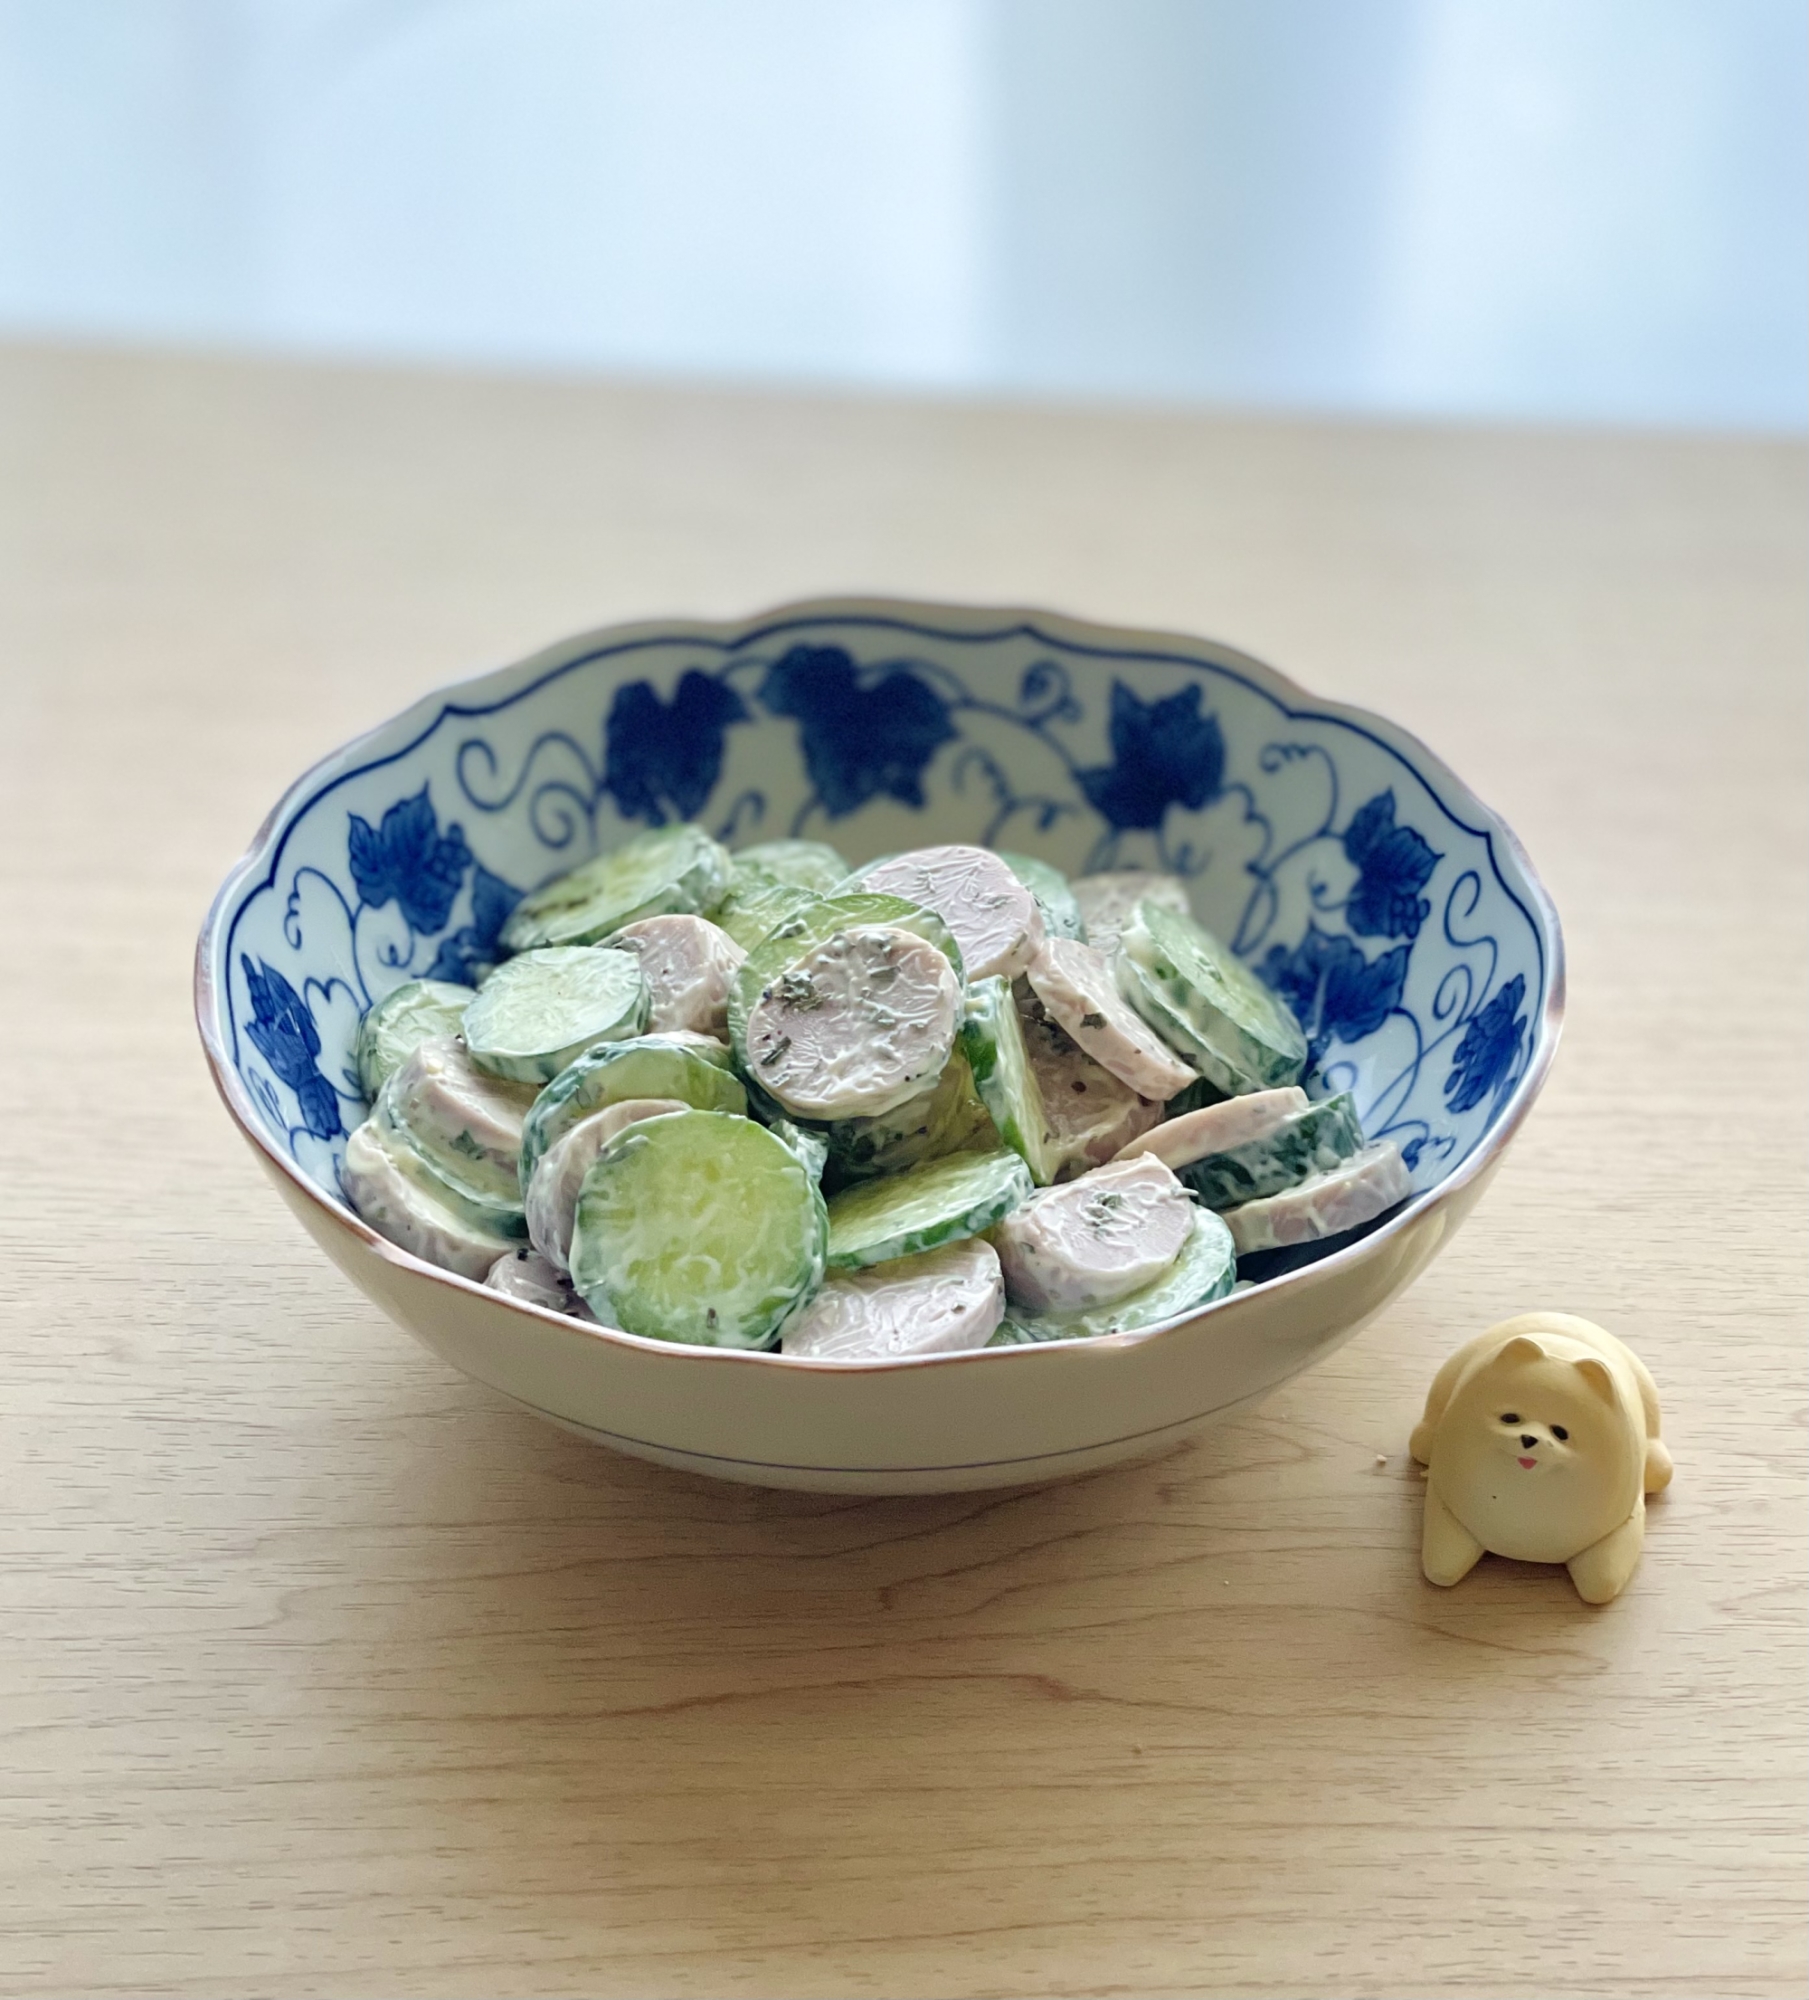 魚肉ソーセージと胡瓜の…超簡単サラダ♡